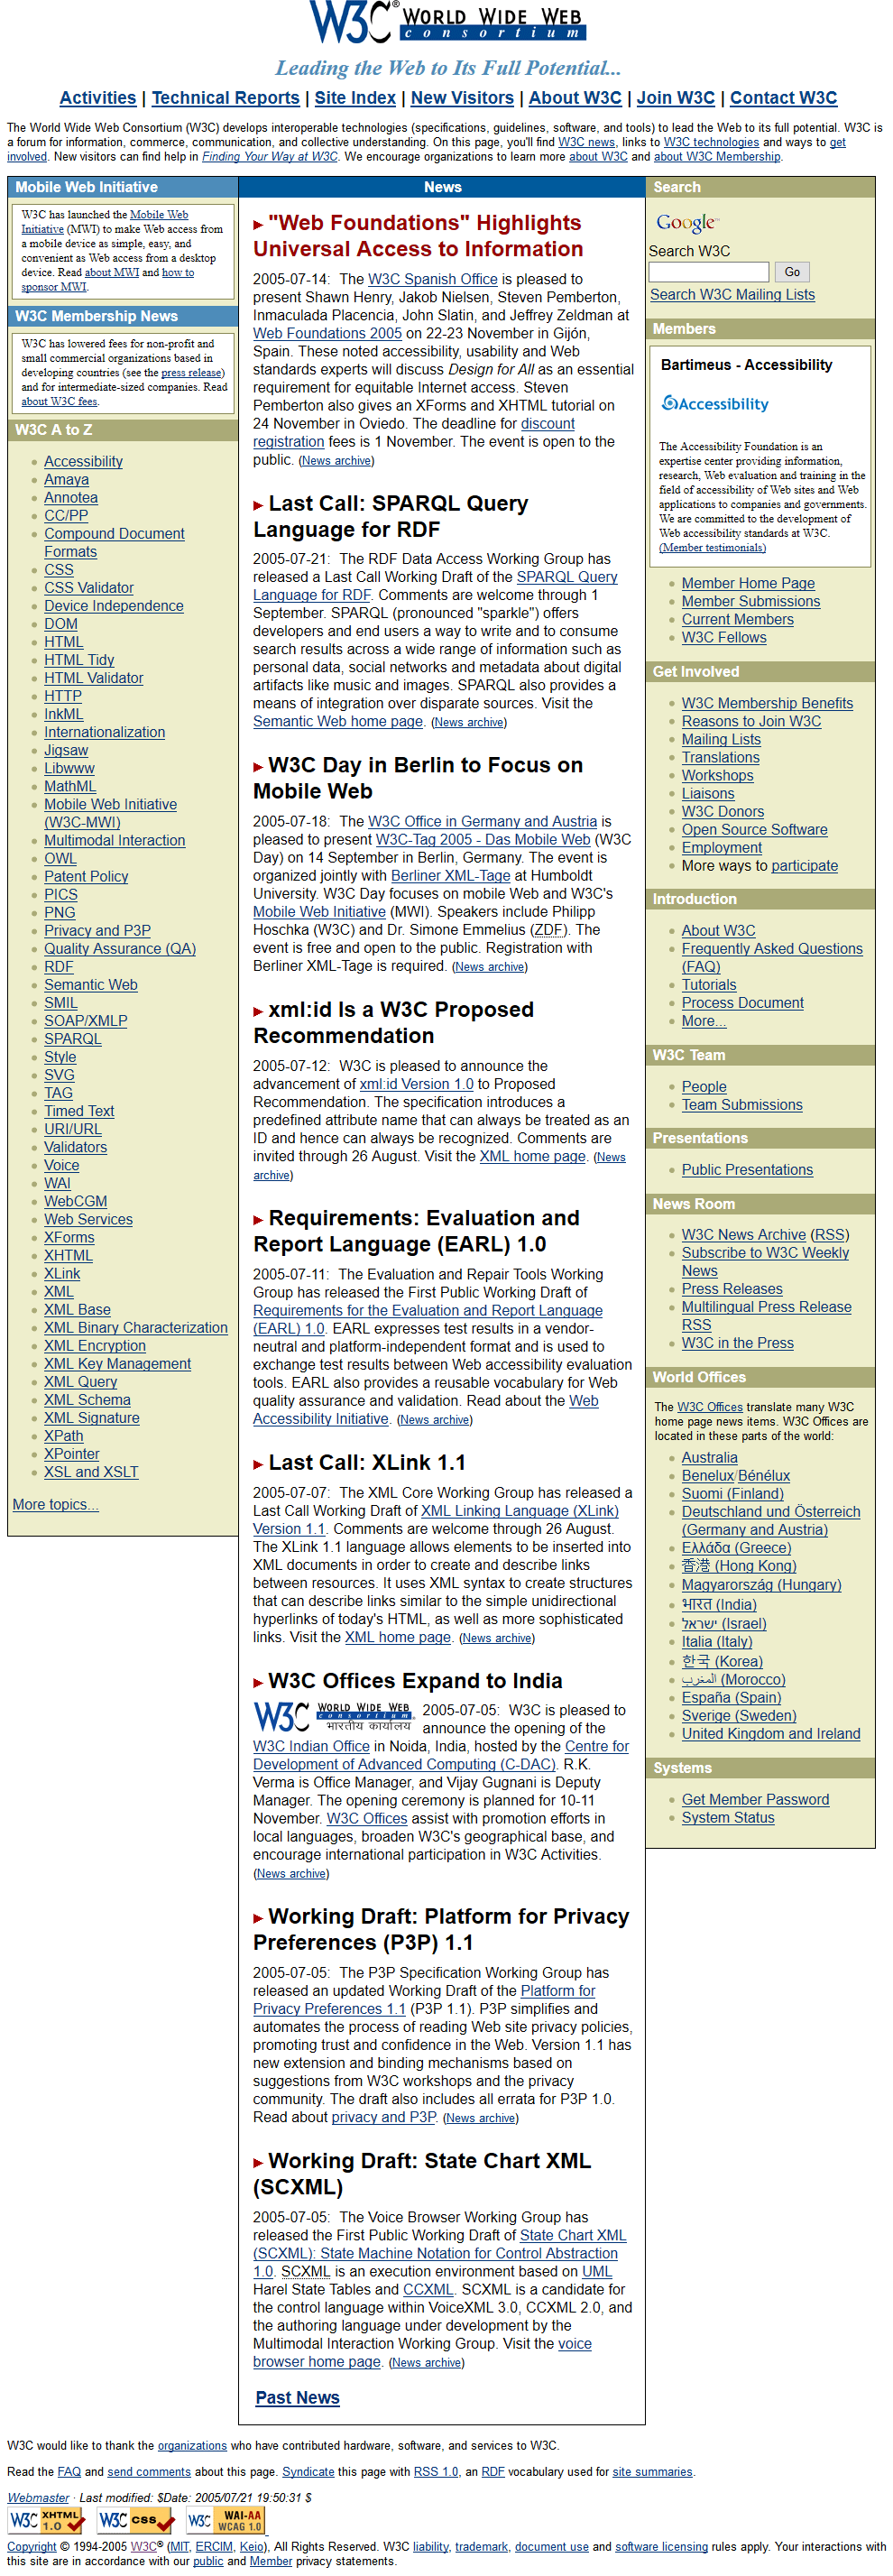 W3C.org in 2005